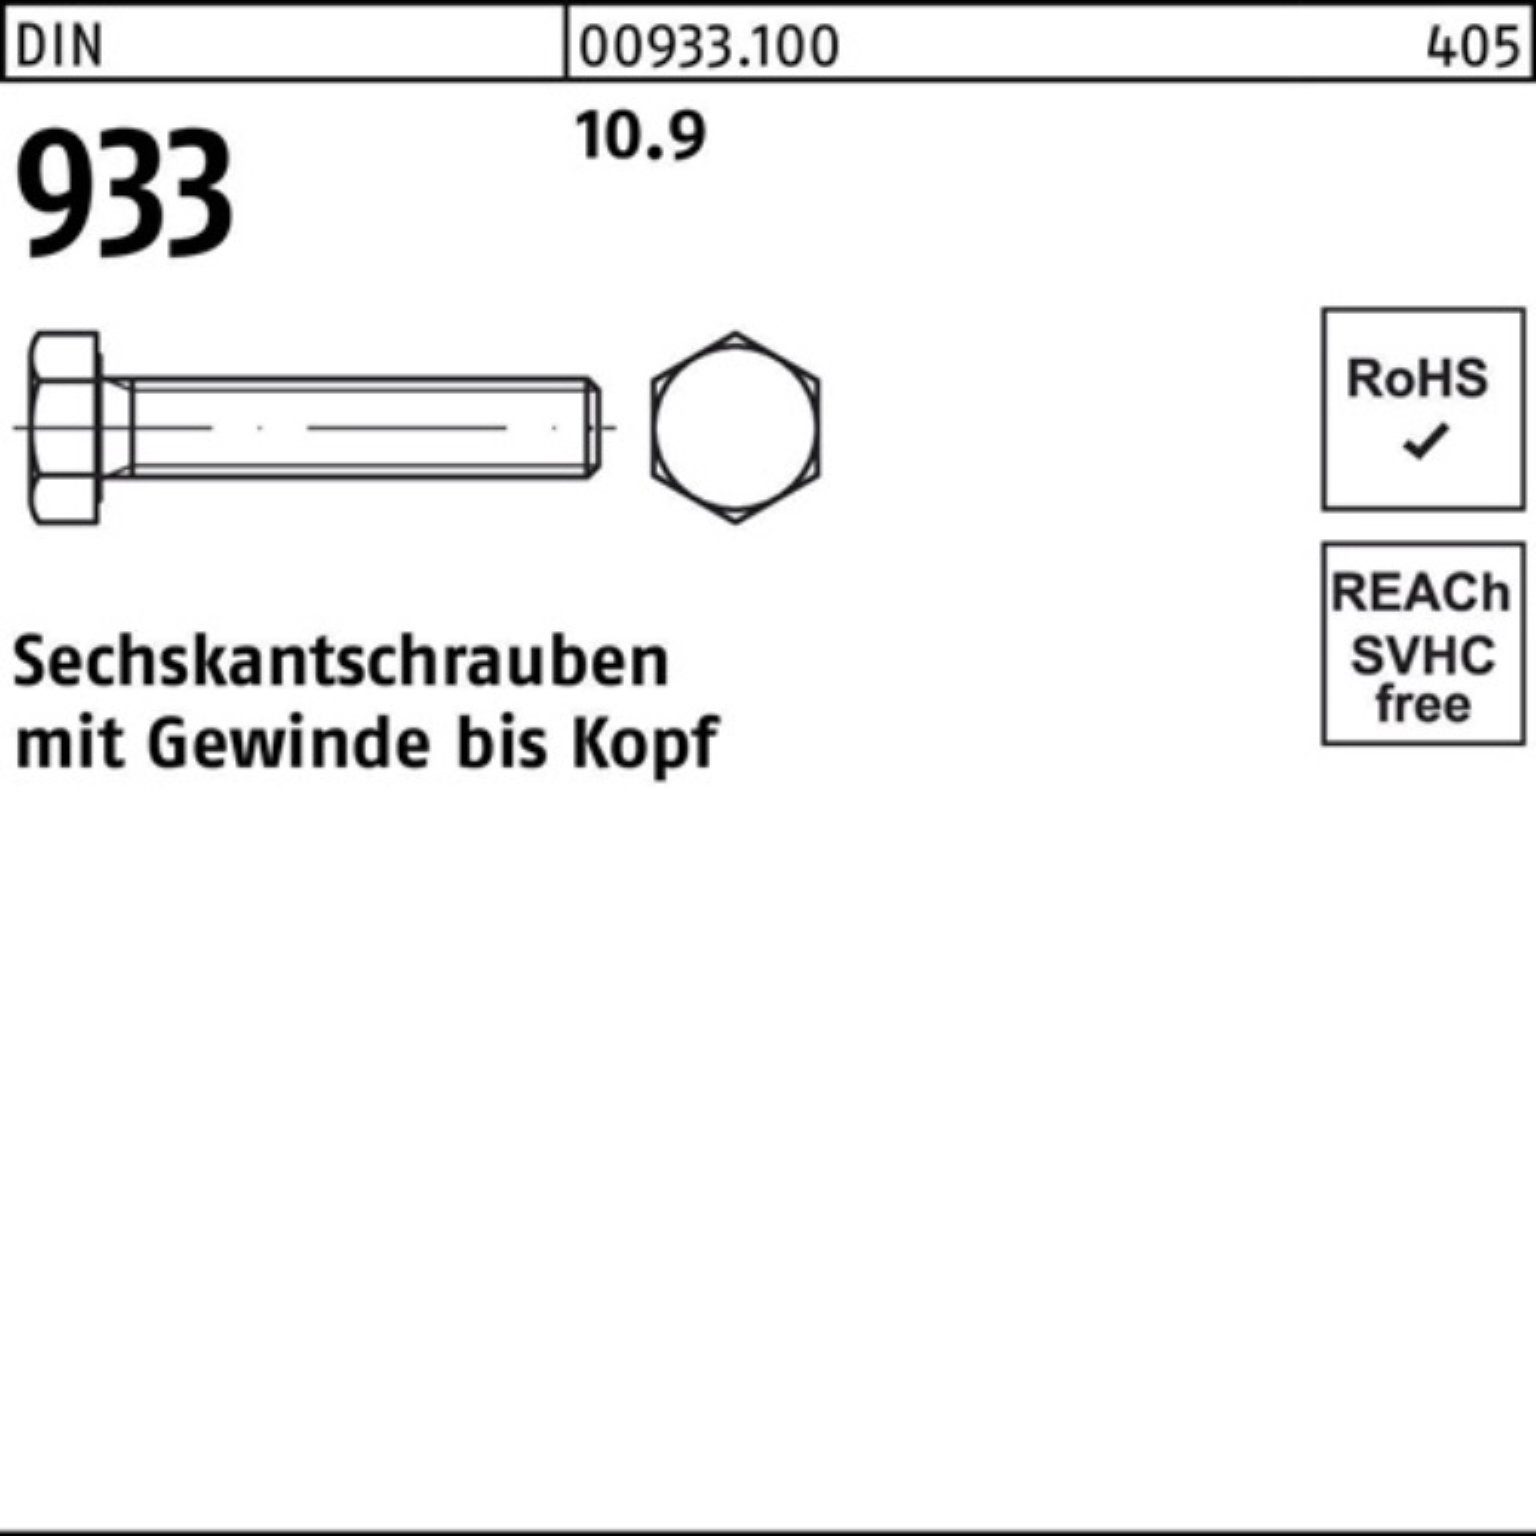 933 200er 25 VG DIN DIN M8x 933 200 Sechskantschraube Pack Reyher 10.9 Stück Sechskantschraube